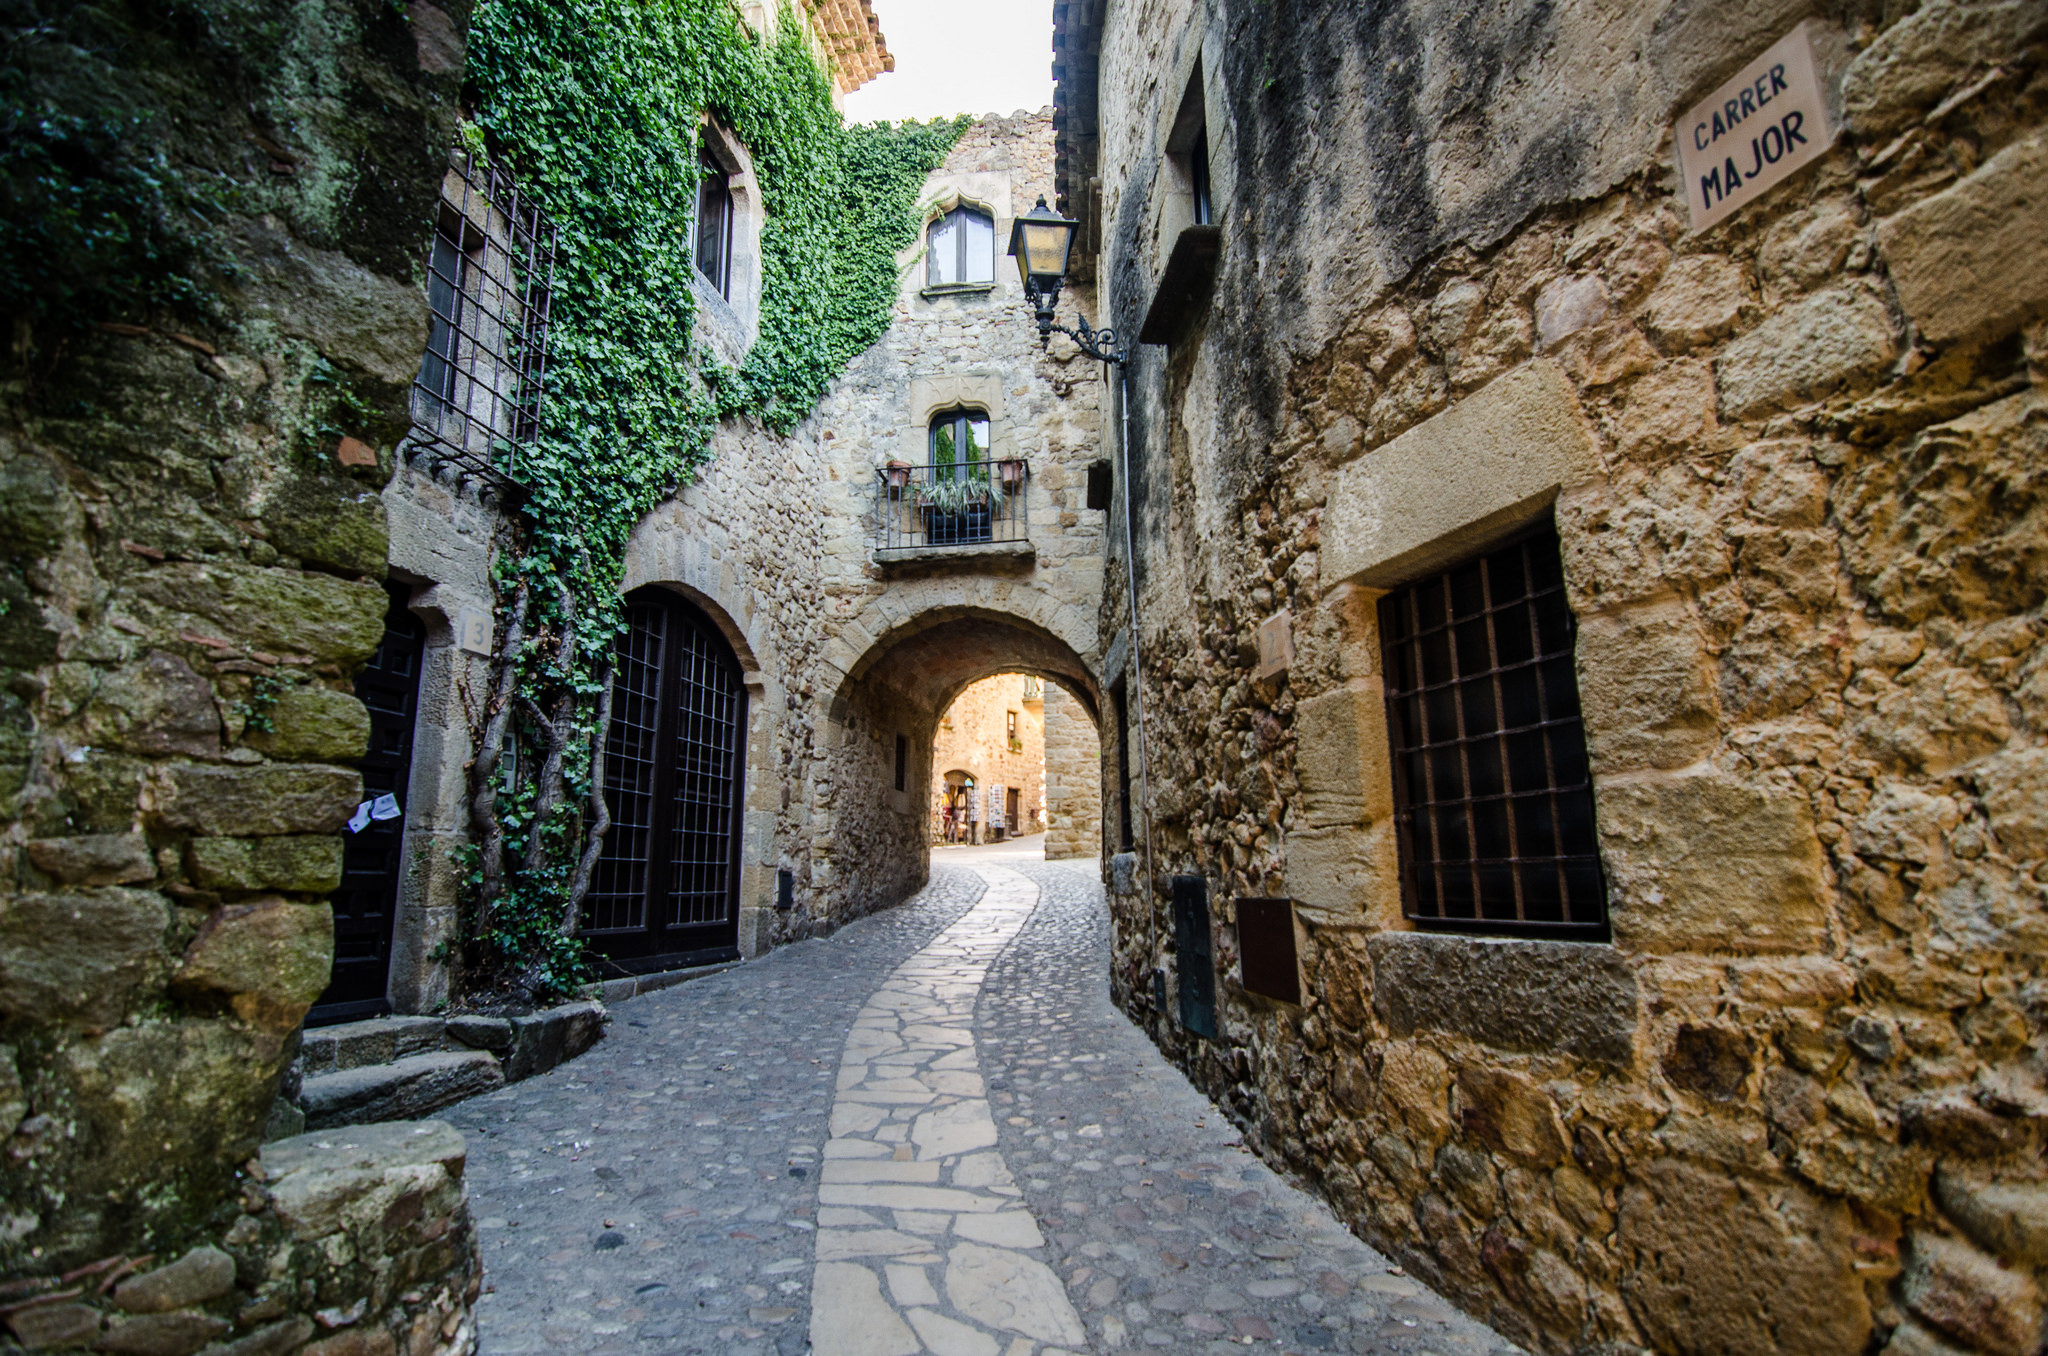 La cité médiévale de Pals, et ses ruelles pavées. Crédit photo @Michele Ursino - Flickr